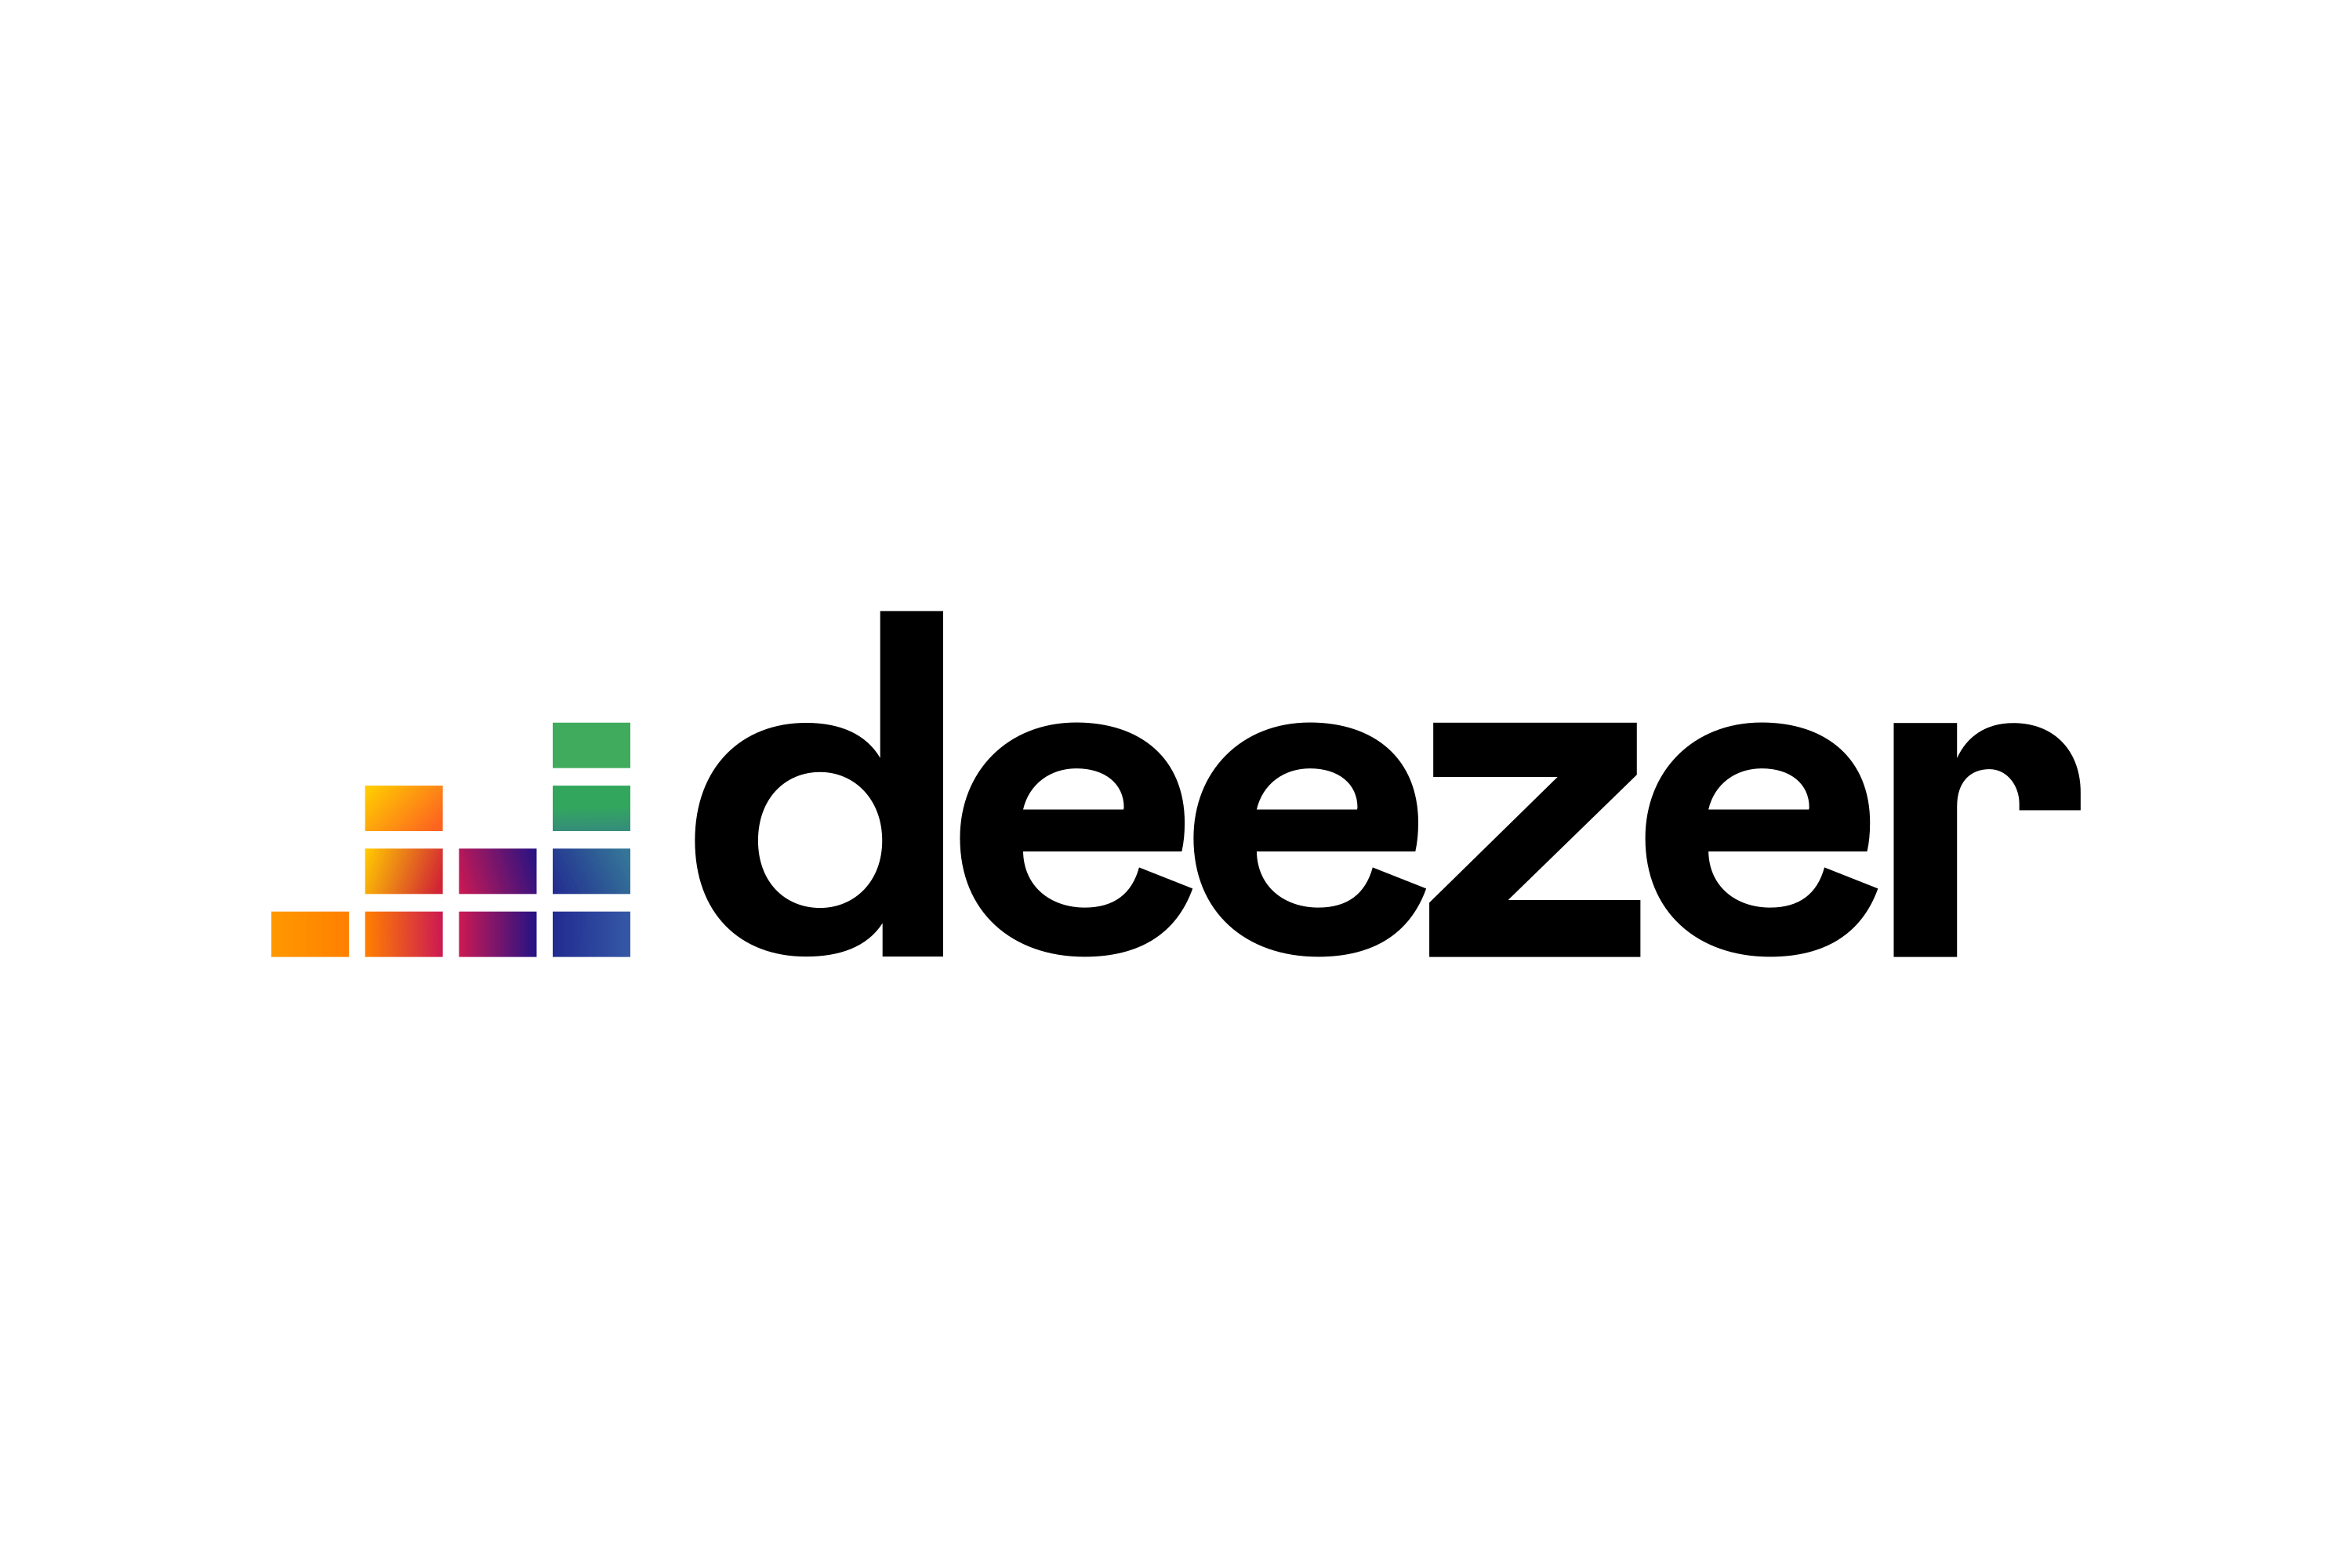 Deezer-Logo.wine